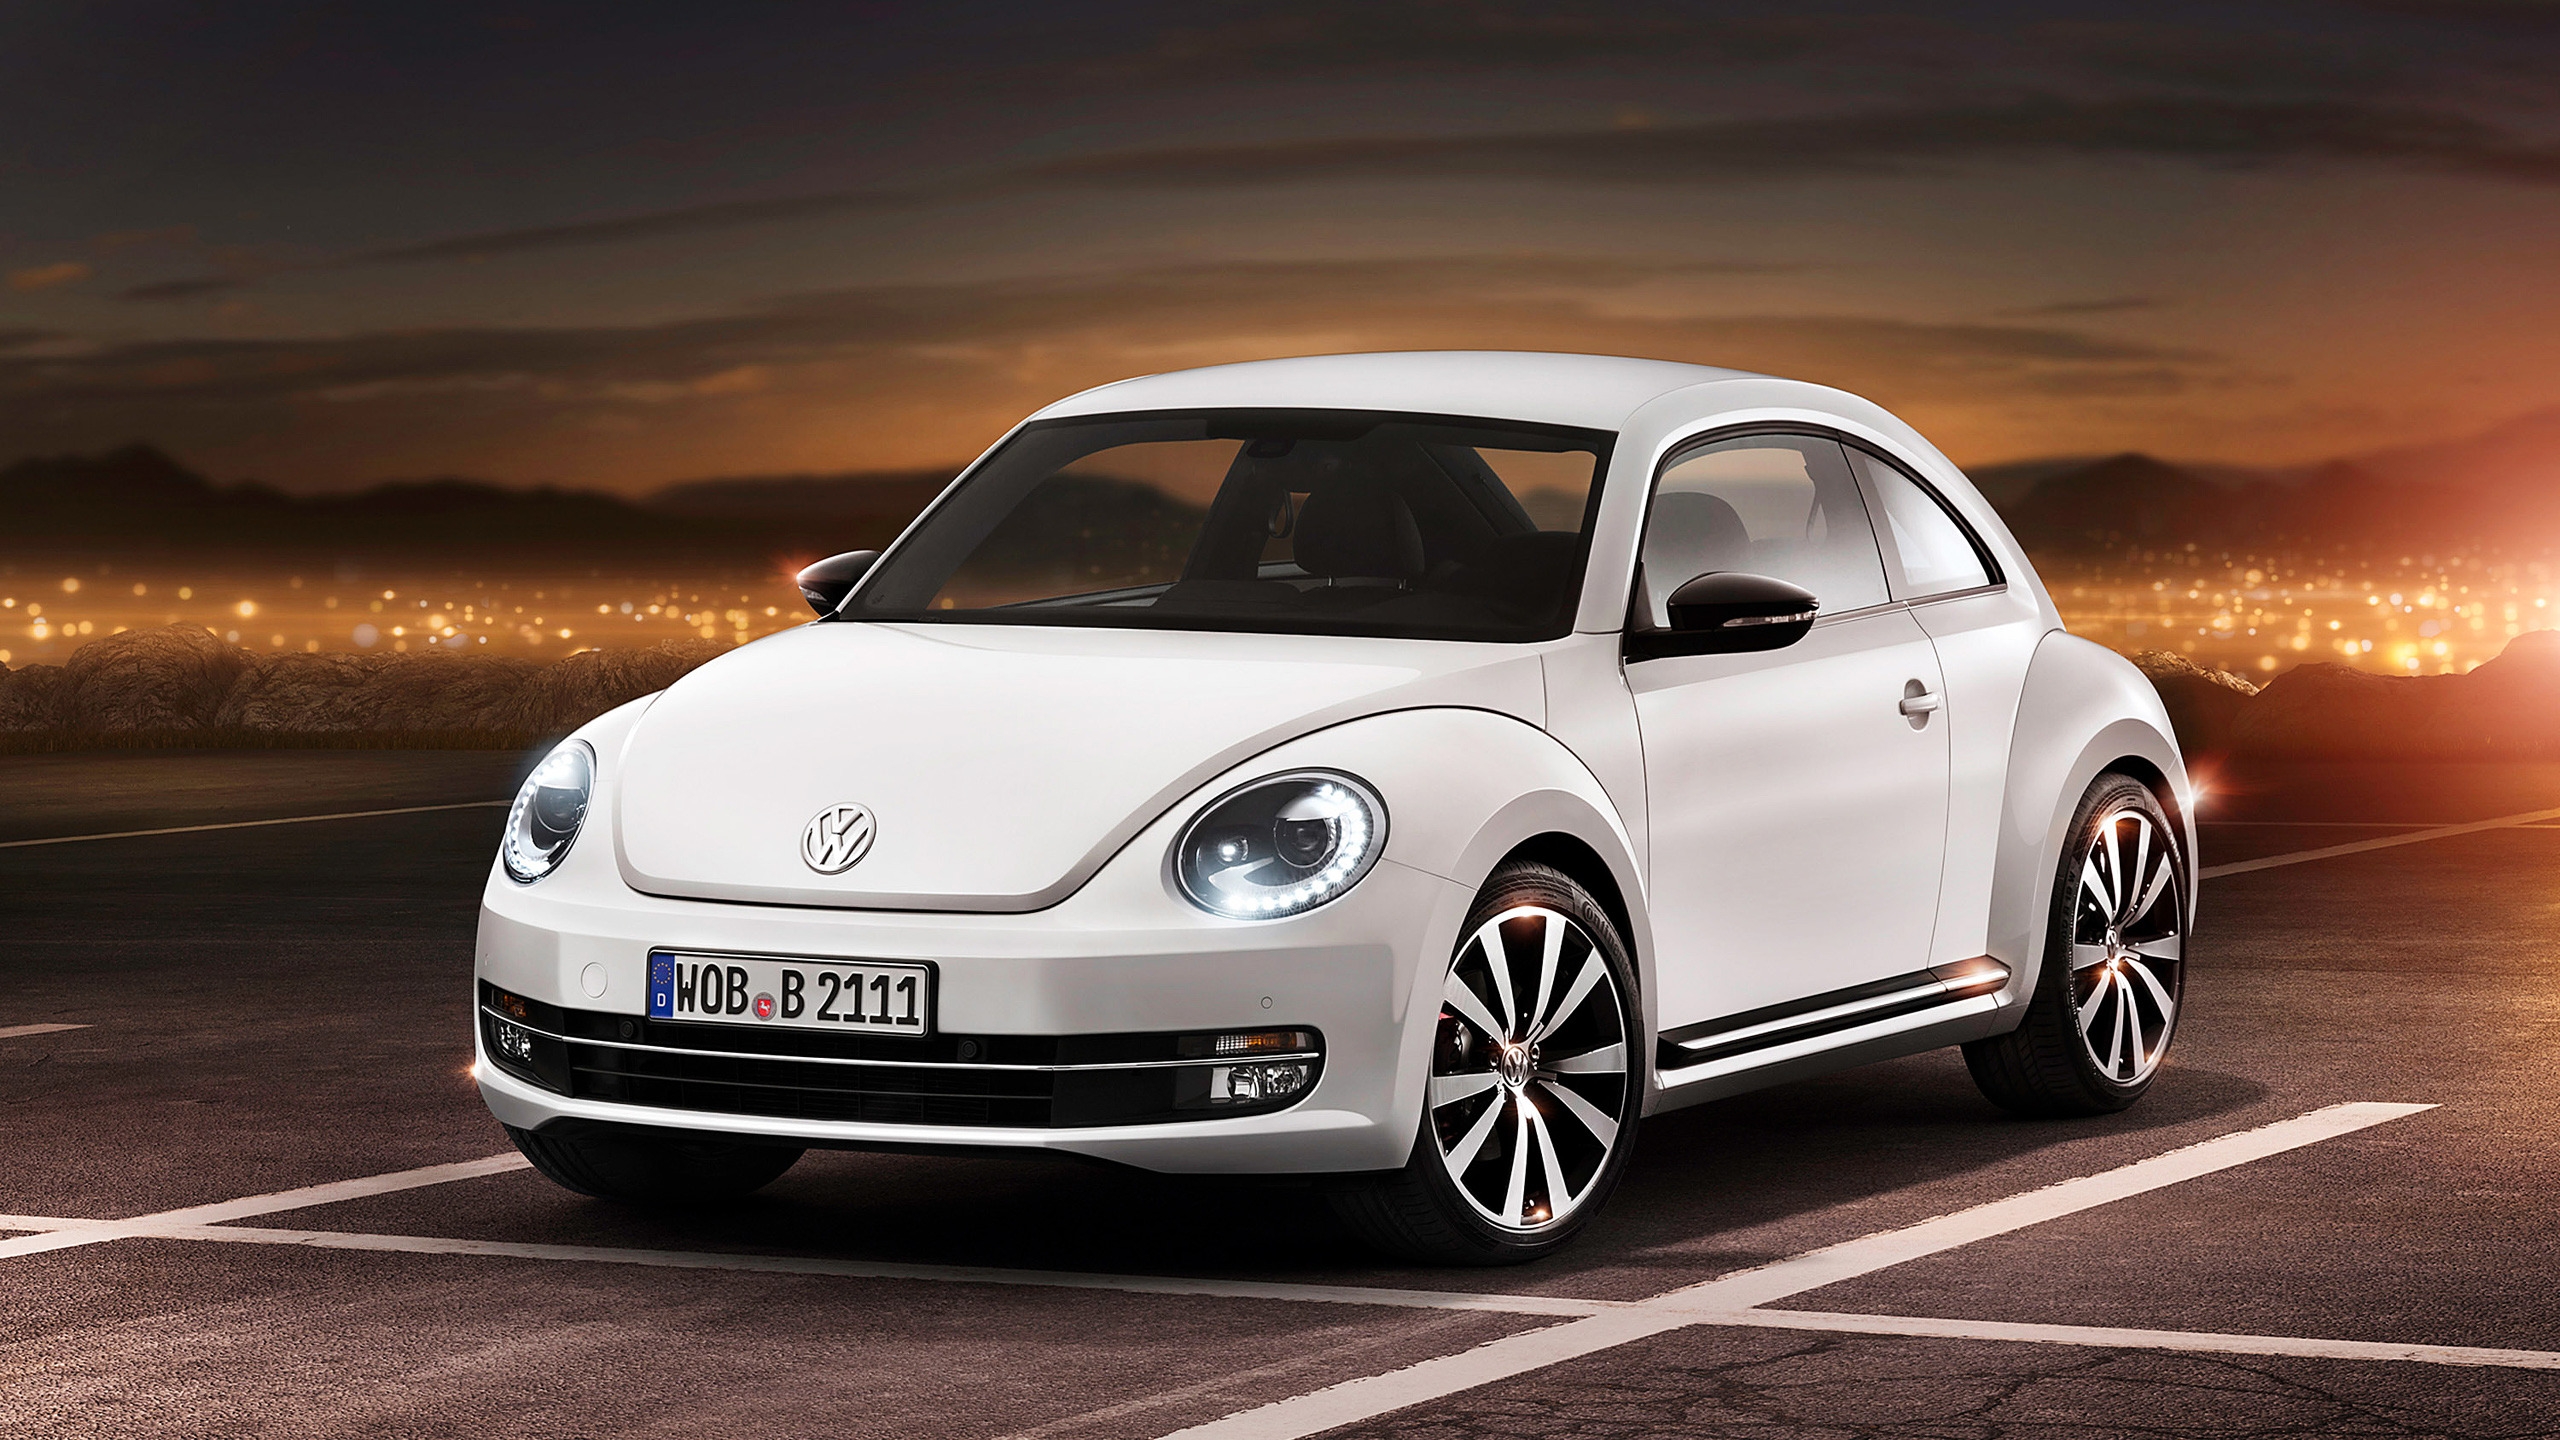 2012 Volkswagen Beetle for 2560x1440 HDTV resolution